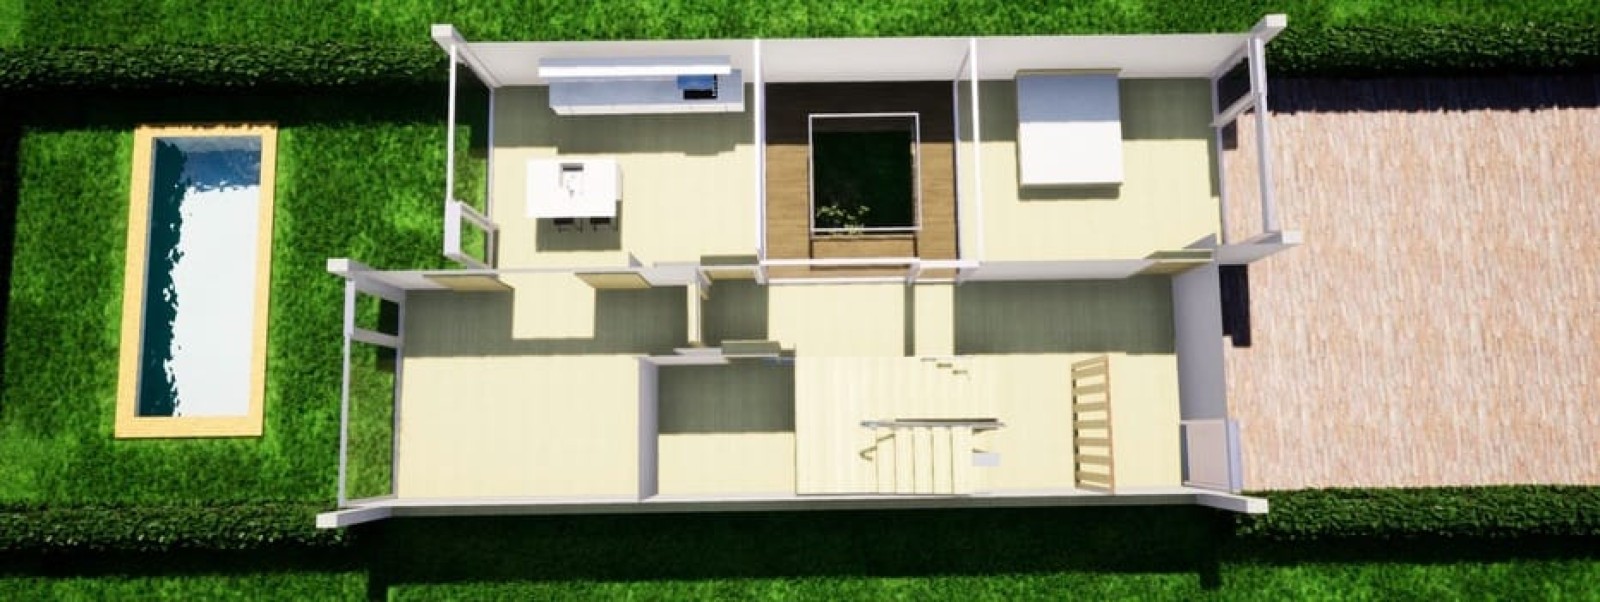 Villa de 4 dormitorios, nueva construcción, en venta en Tavira, Algarve_229491